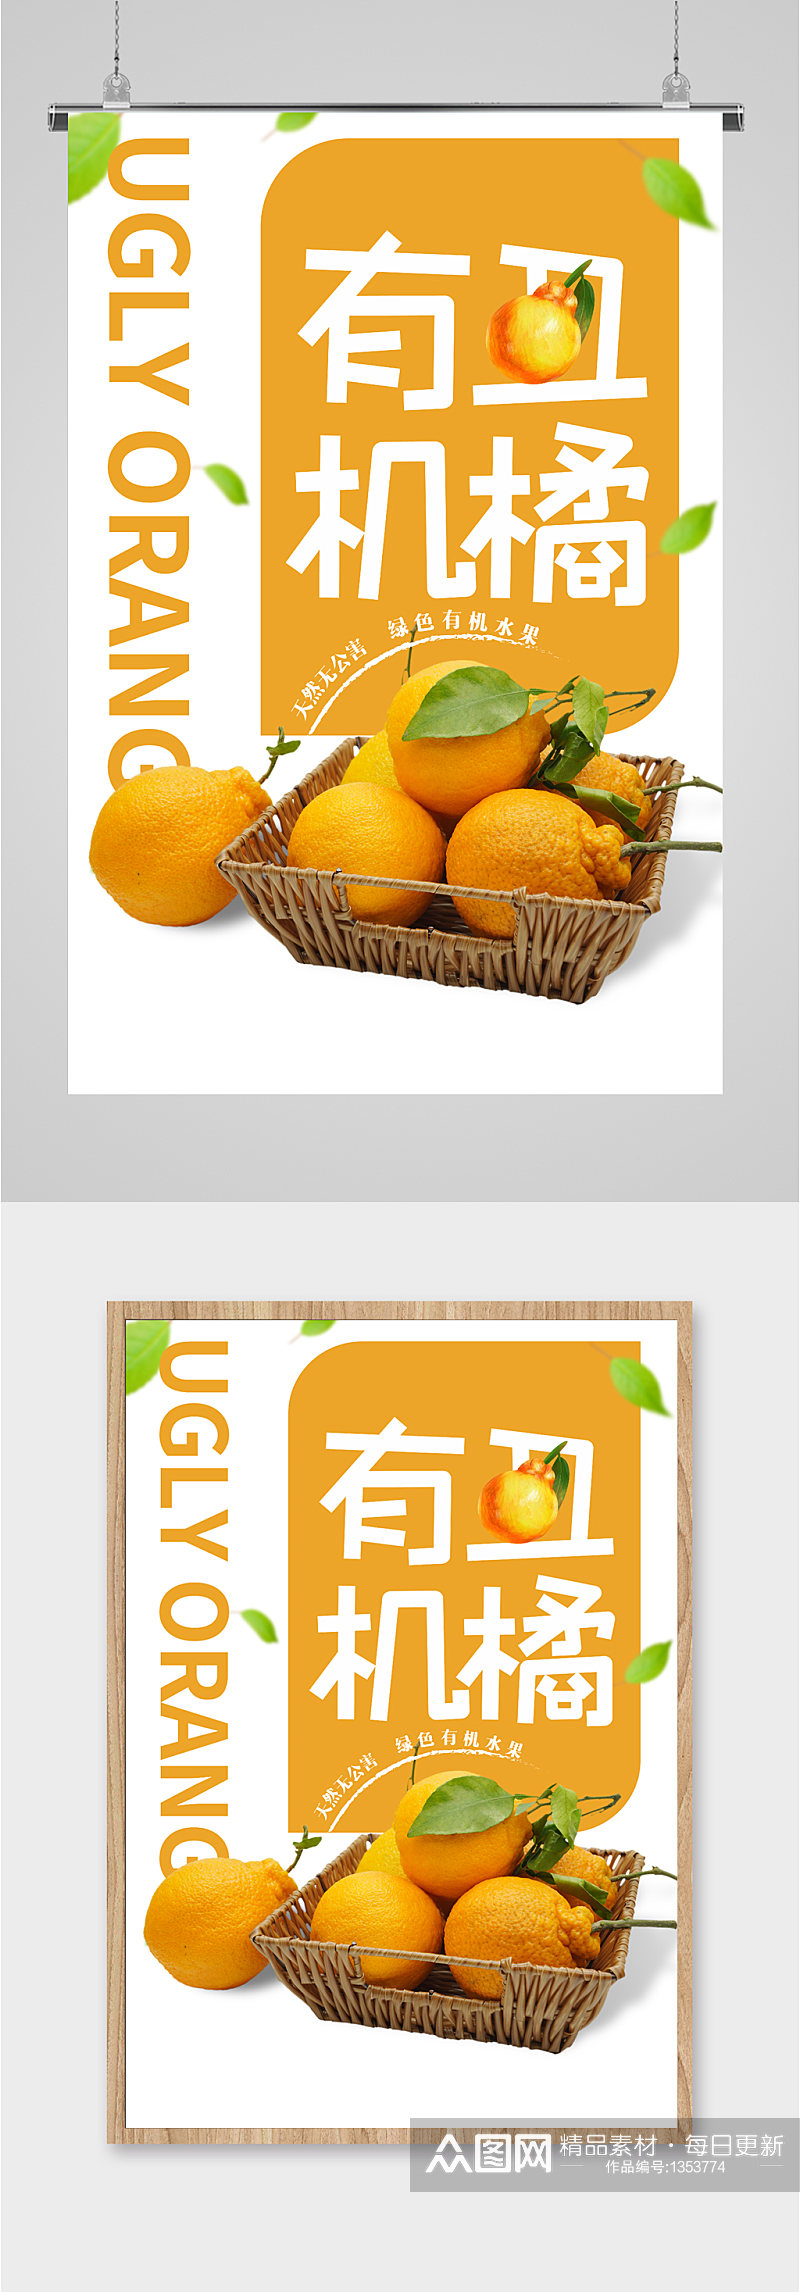 丑橘水果促销海报素材